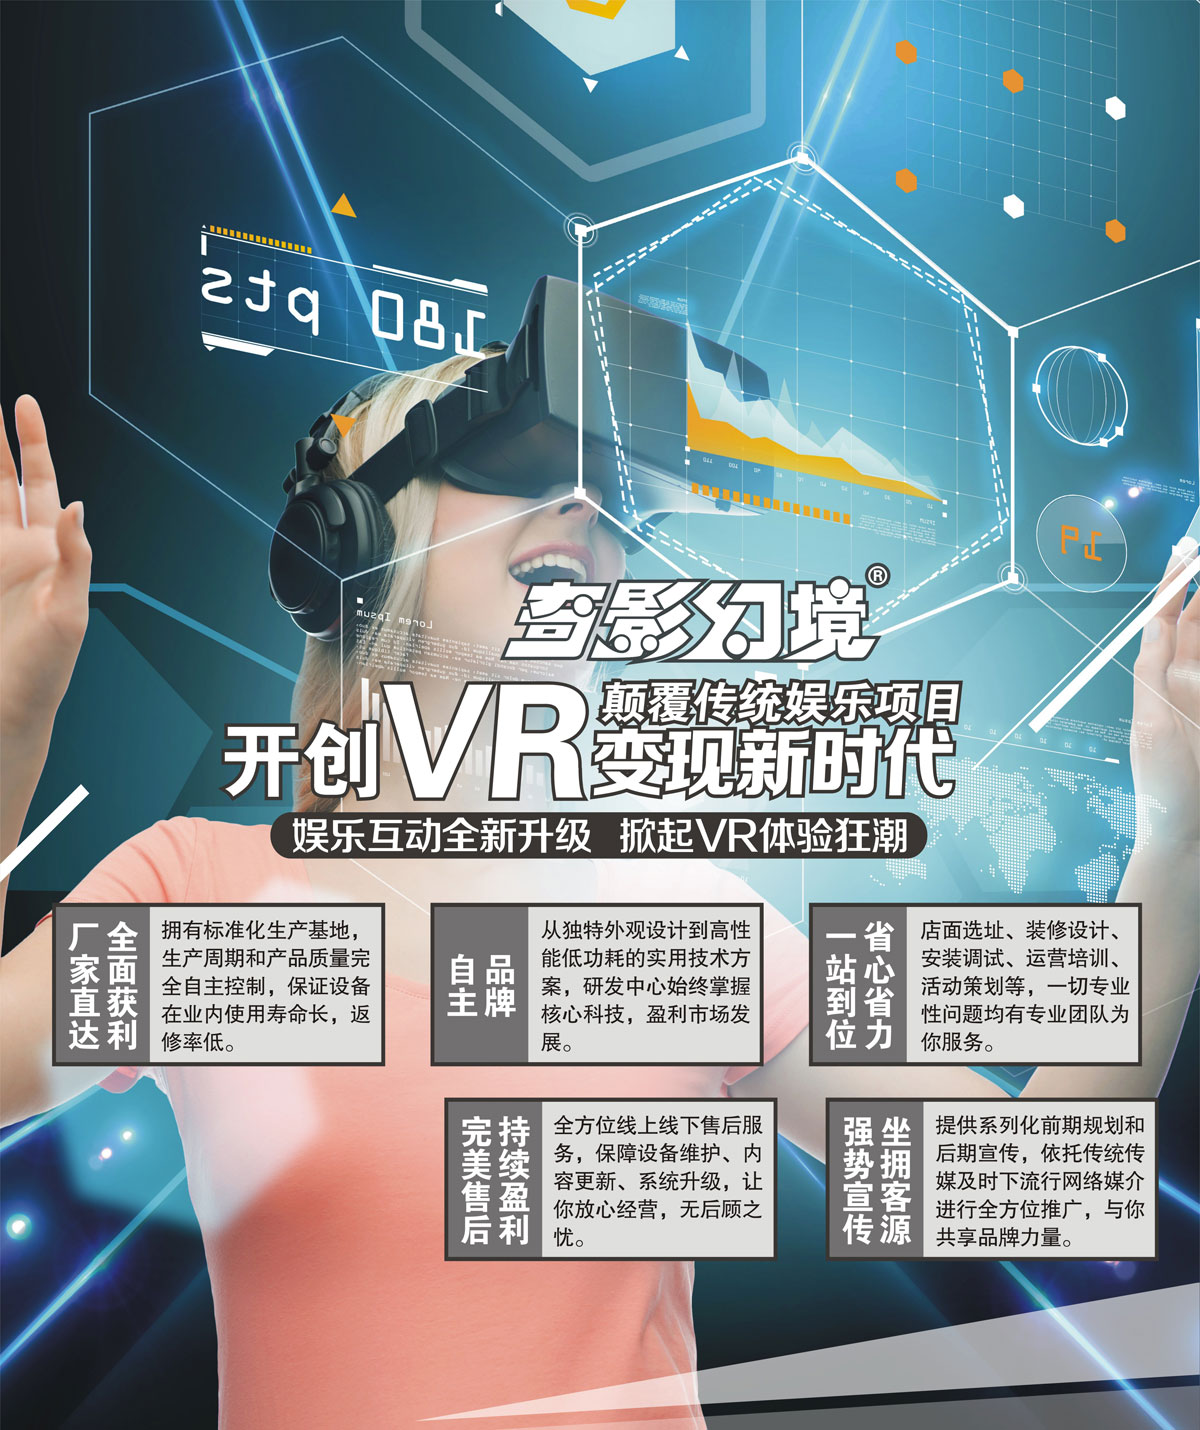 动感影院开创VR变现新时代颠覆传统娱乐项目.jpg